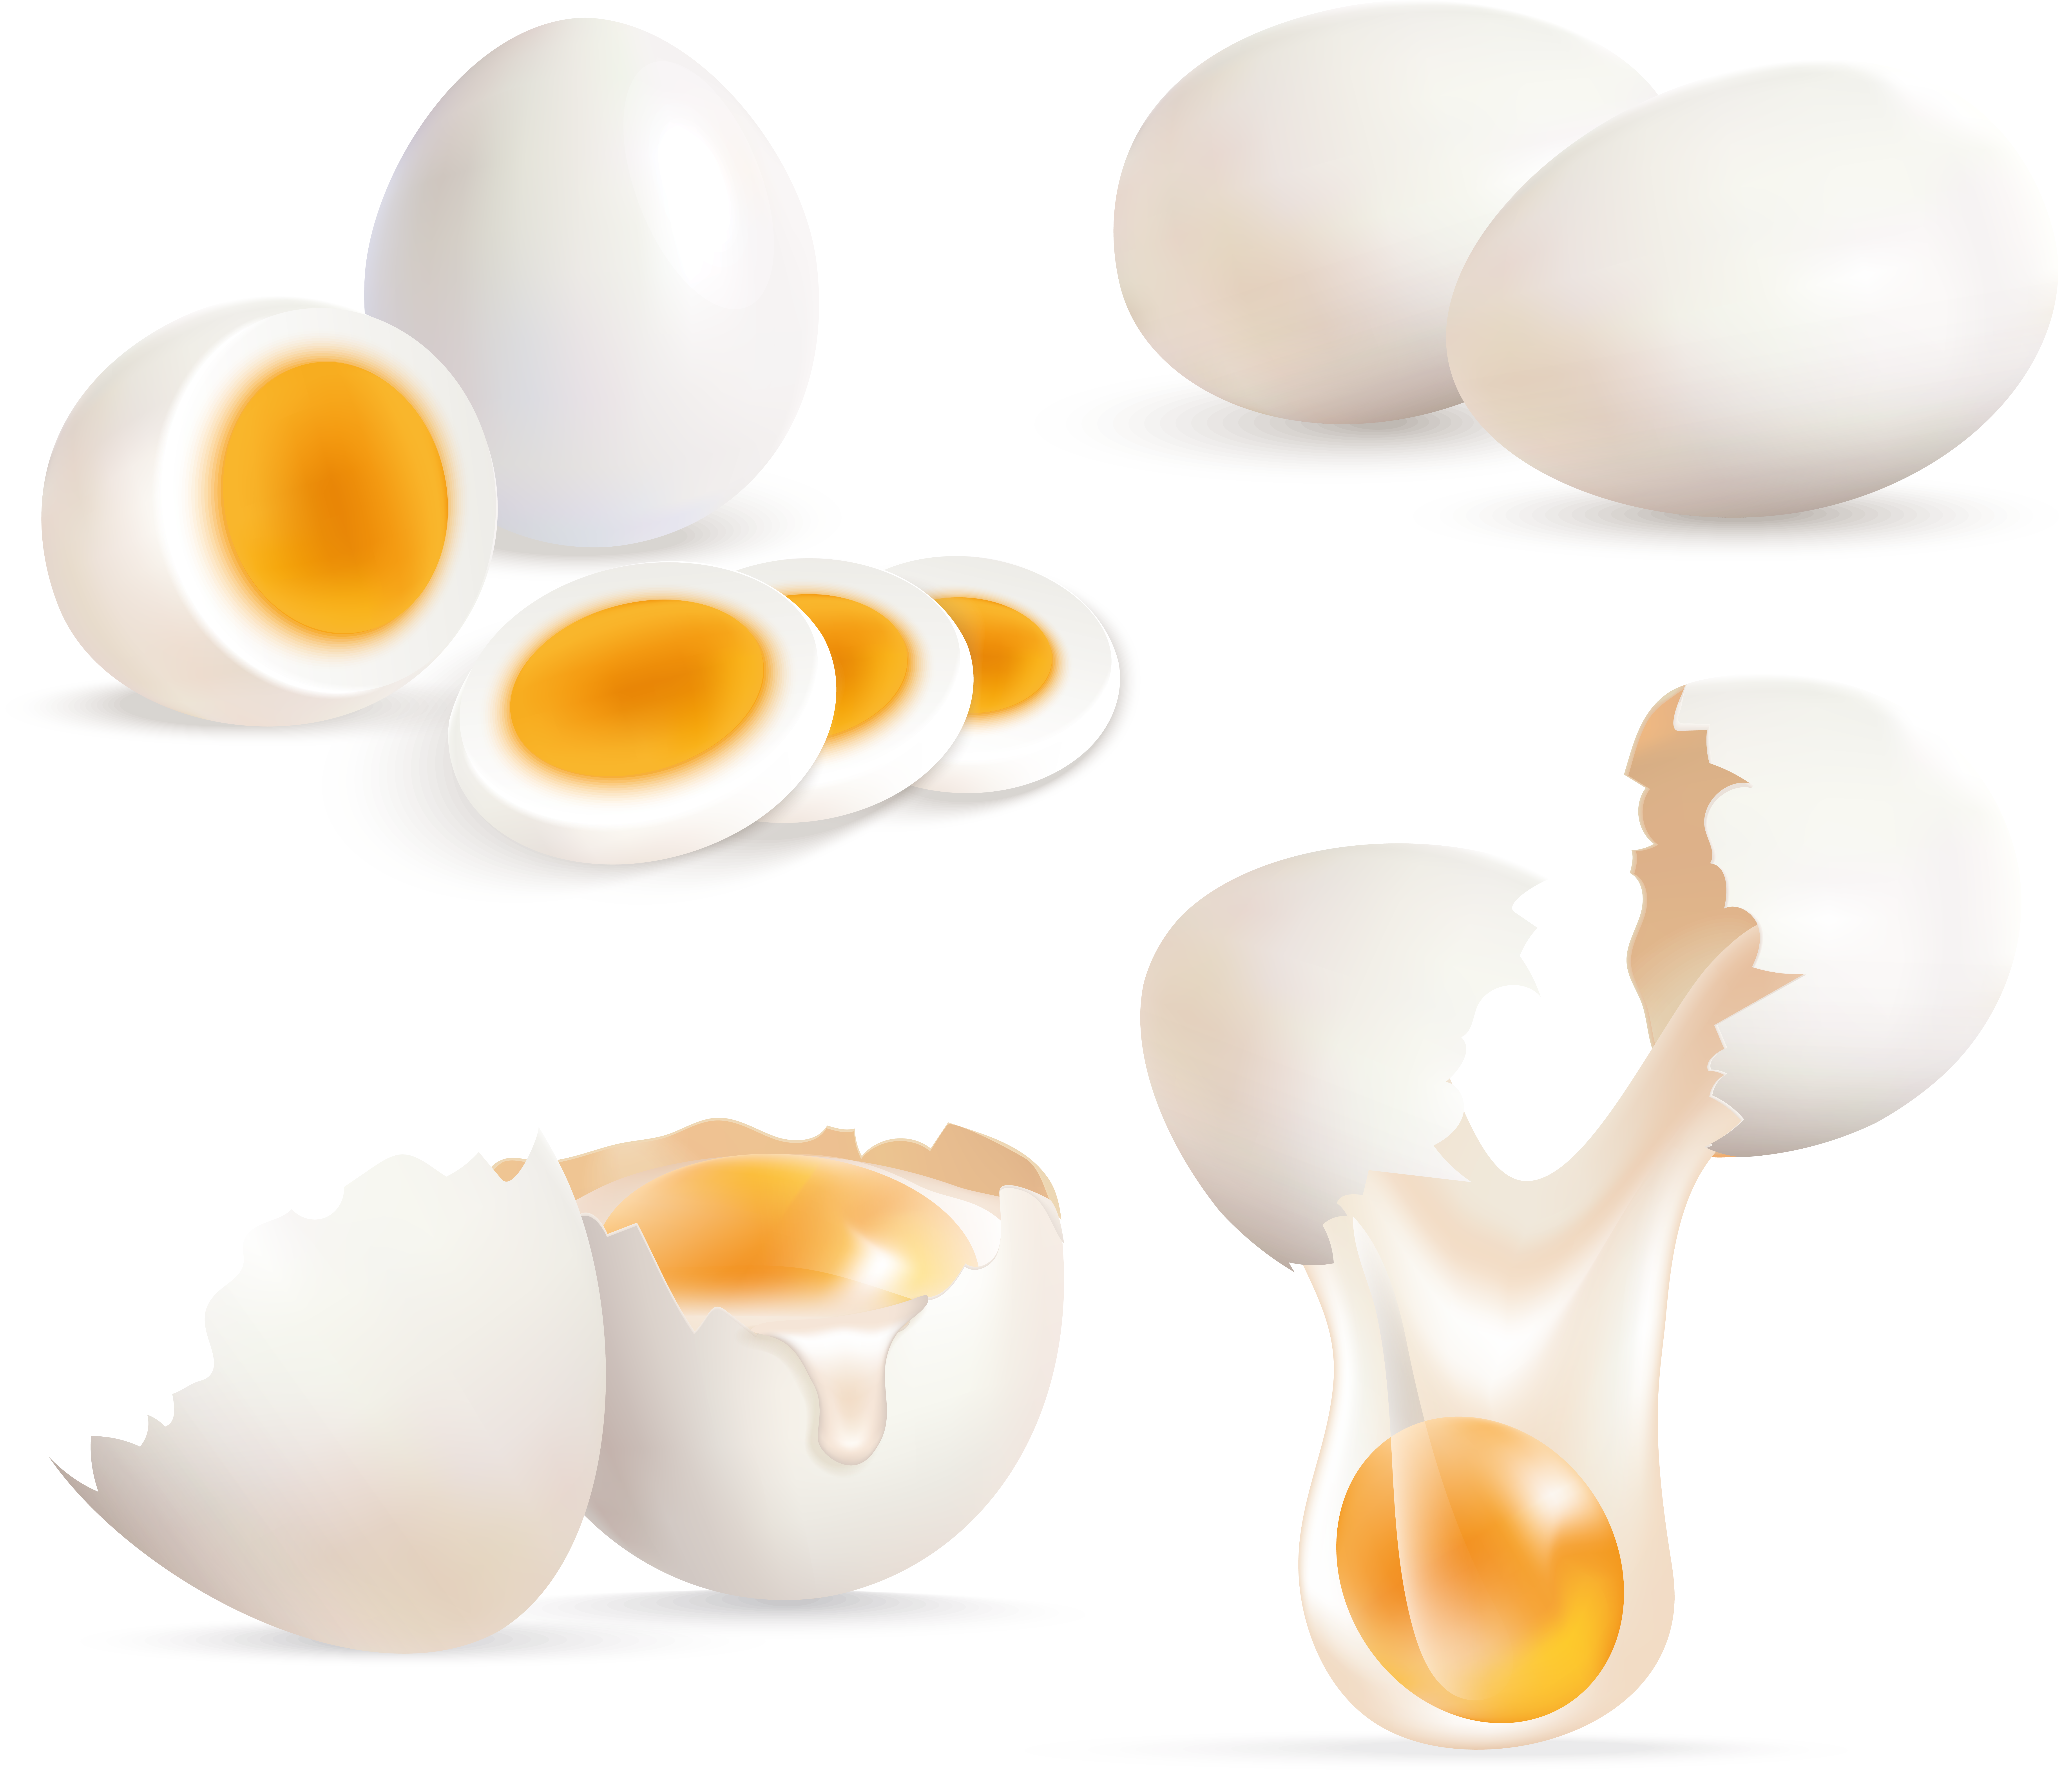 फटा अंडा, कटा हुआ अंडा